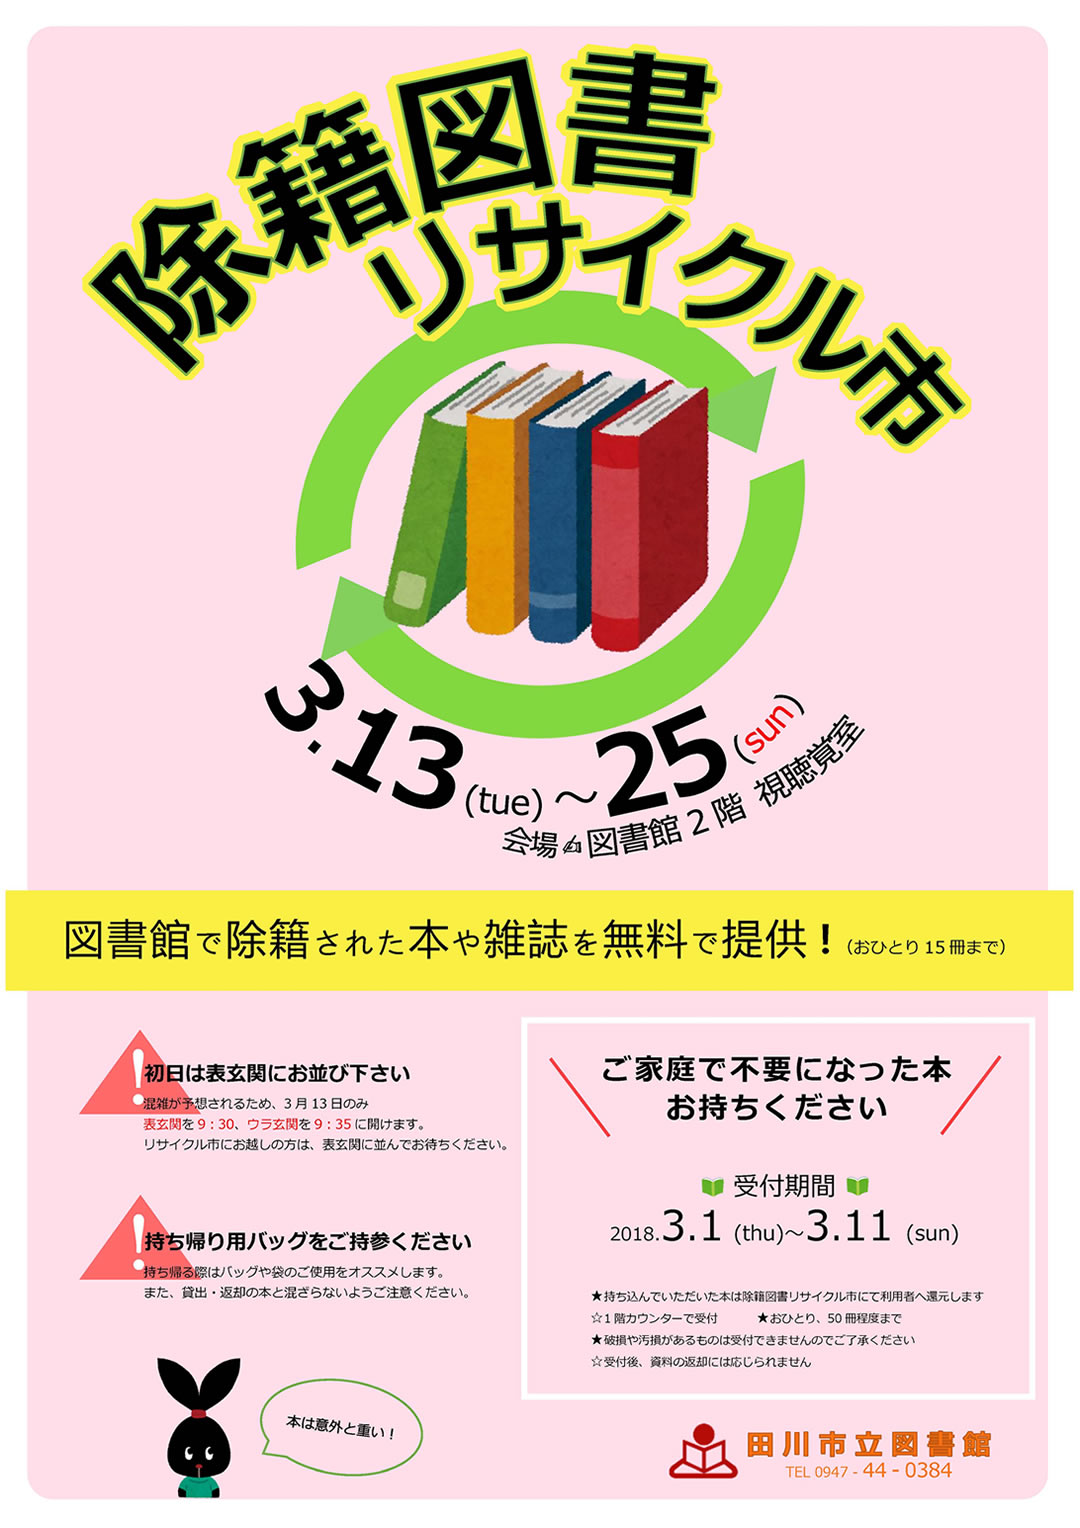 イベント案内 | 田川市立図書館 | TAGAWA PUBLIC LIBRARY